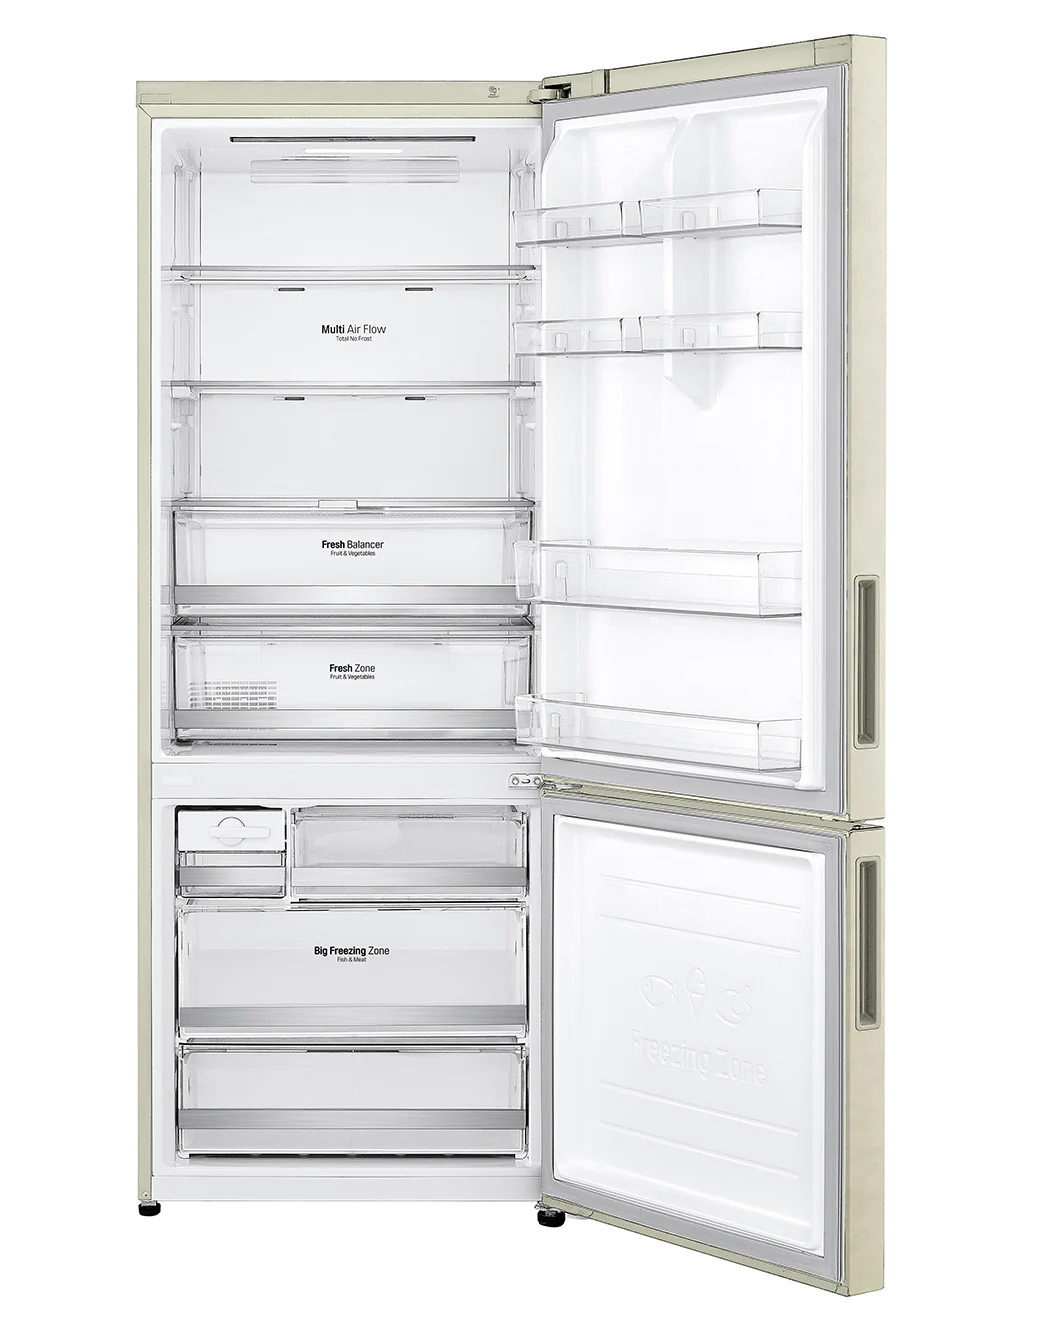 Холодильник LG GC-B569PECM.ASEQCIS